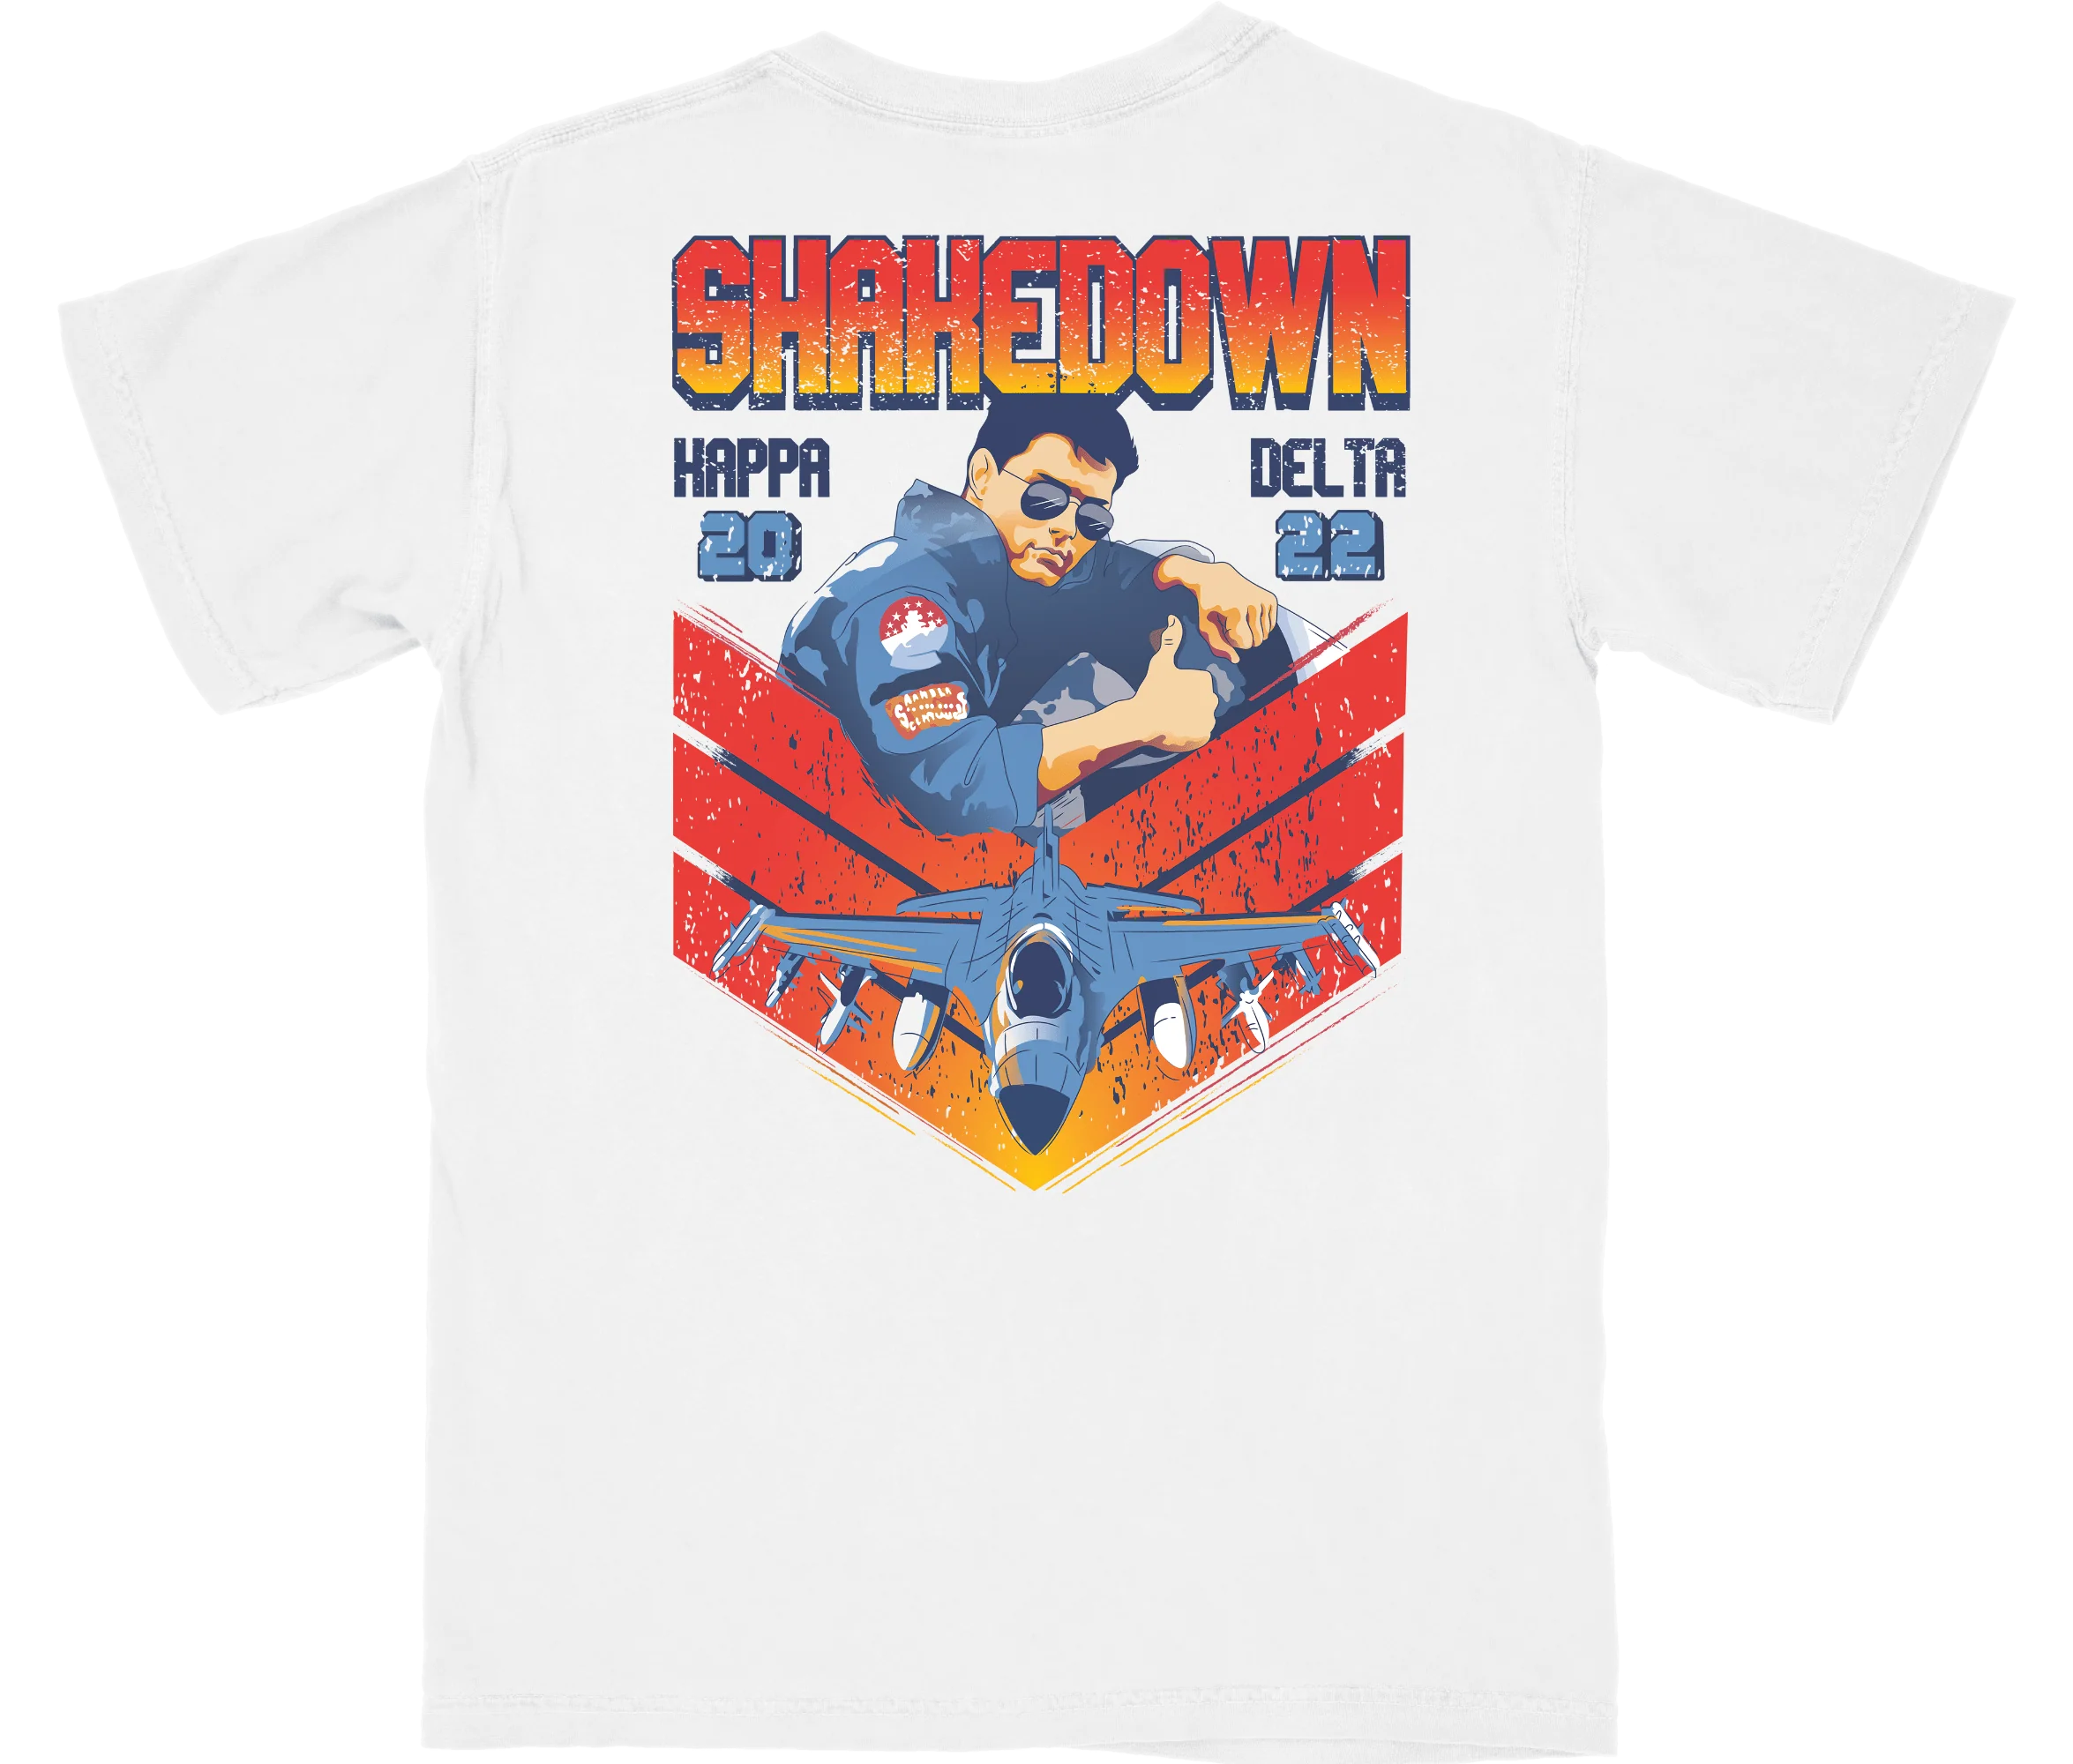 Shakedown Shirt